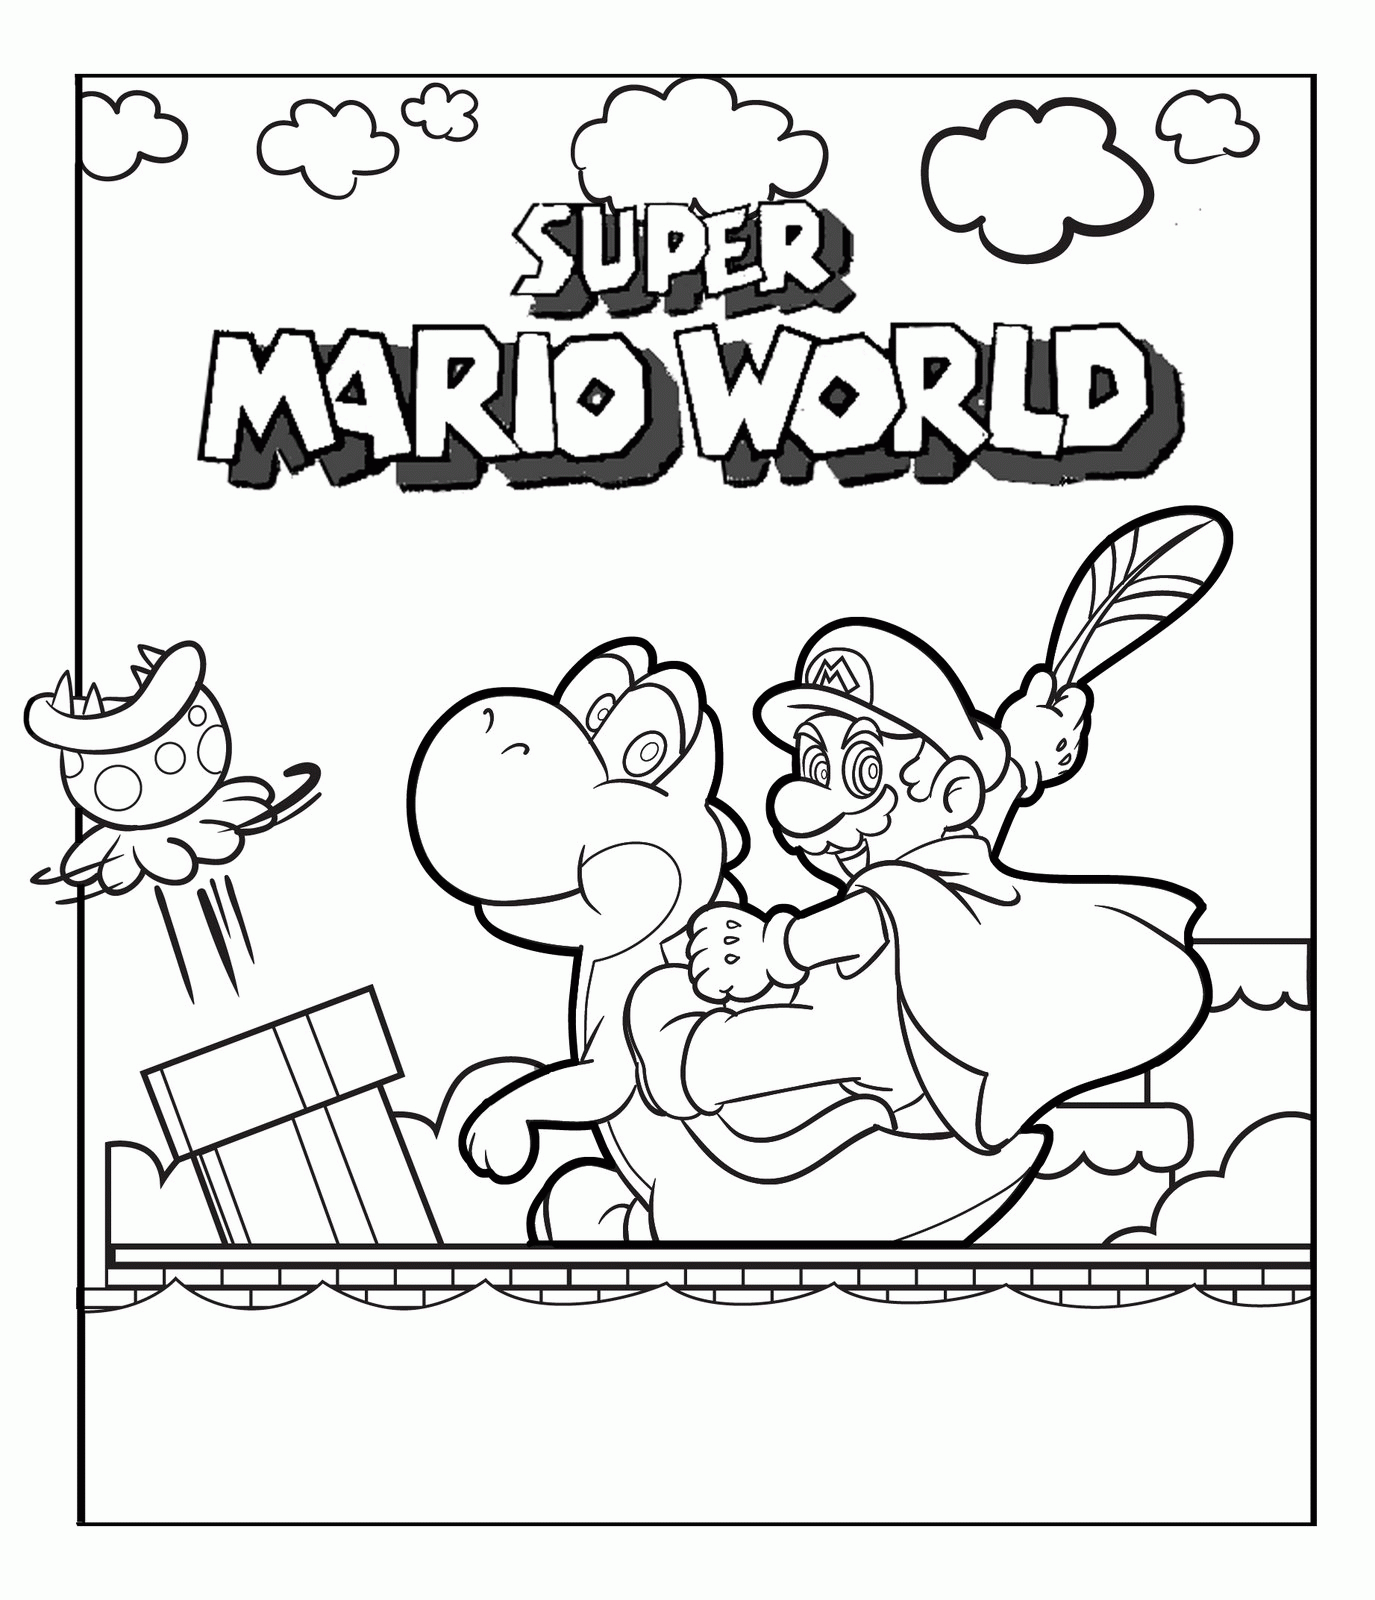 Imagem para impressão de Super Mario World